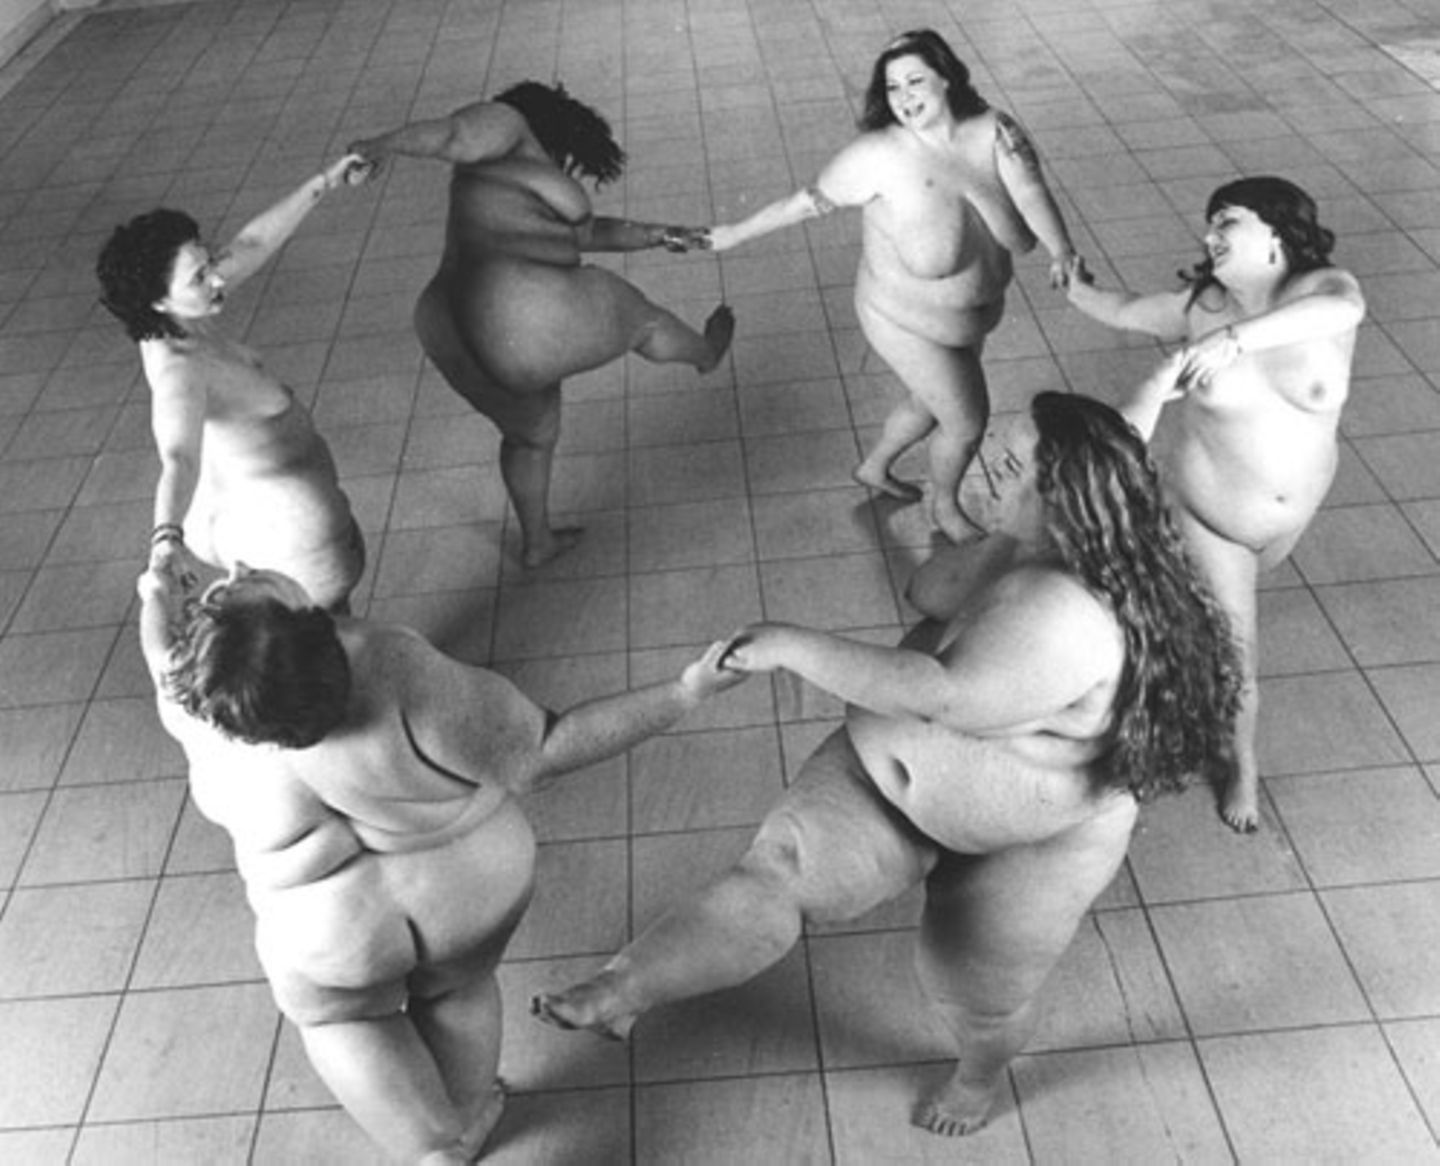 Das Foto der übergewichtigen Frau bekam auf seiner nächsten Fotoausstellung am meisten Aufmerksamkeit. Nimoy beschloss, dieses Konzept weiter zu verfolgen, und setzte sich mit einer der Gruppe "Big Burlesque" in Verbindung - Plus-Size-Tänzerinnen, die für das "Full Body Project" vor der Kamera standen.